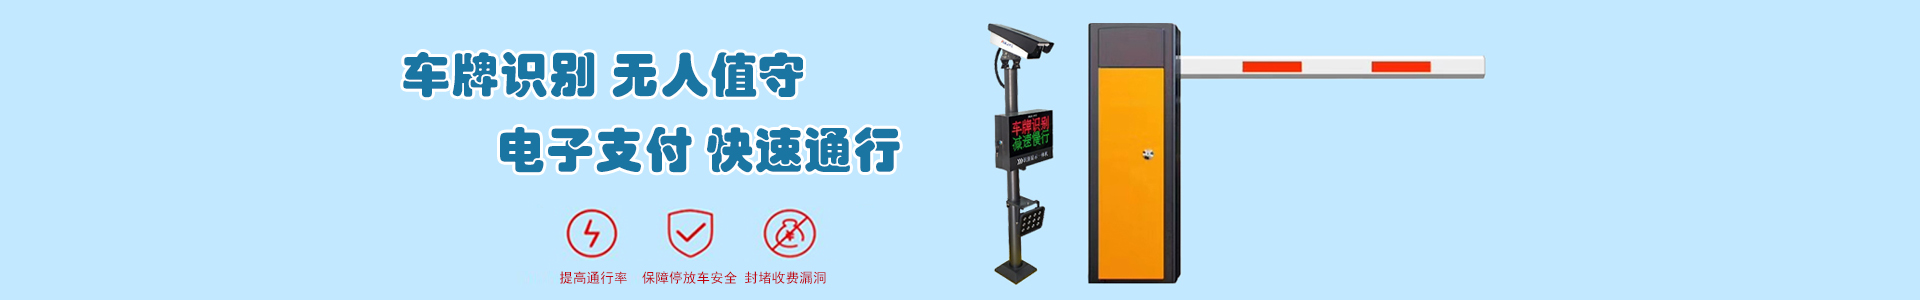 监控2-监控系统-上海帆蓝智能科技有限公司-车辆车牌识别|监控摄像头|道闸|小区门禁|人脸识别|伸缩门|